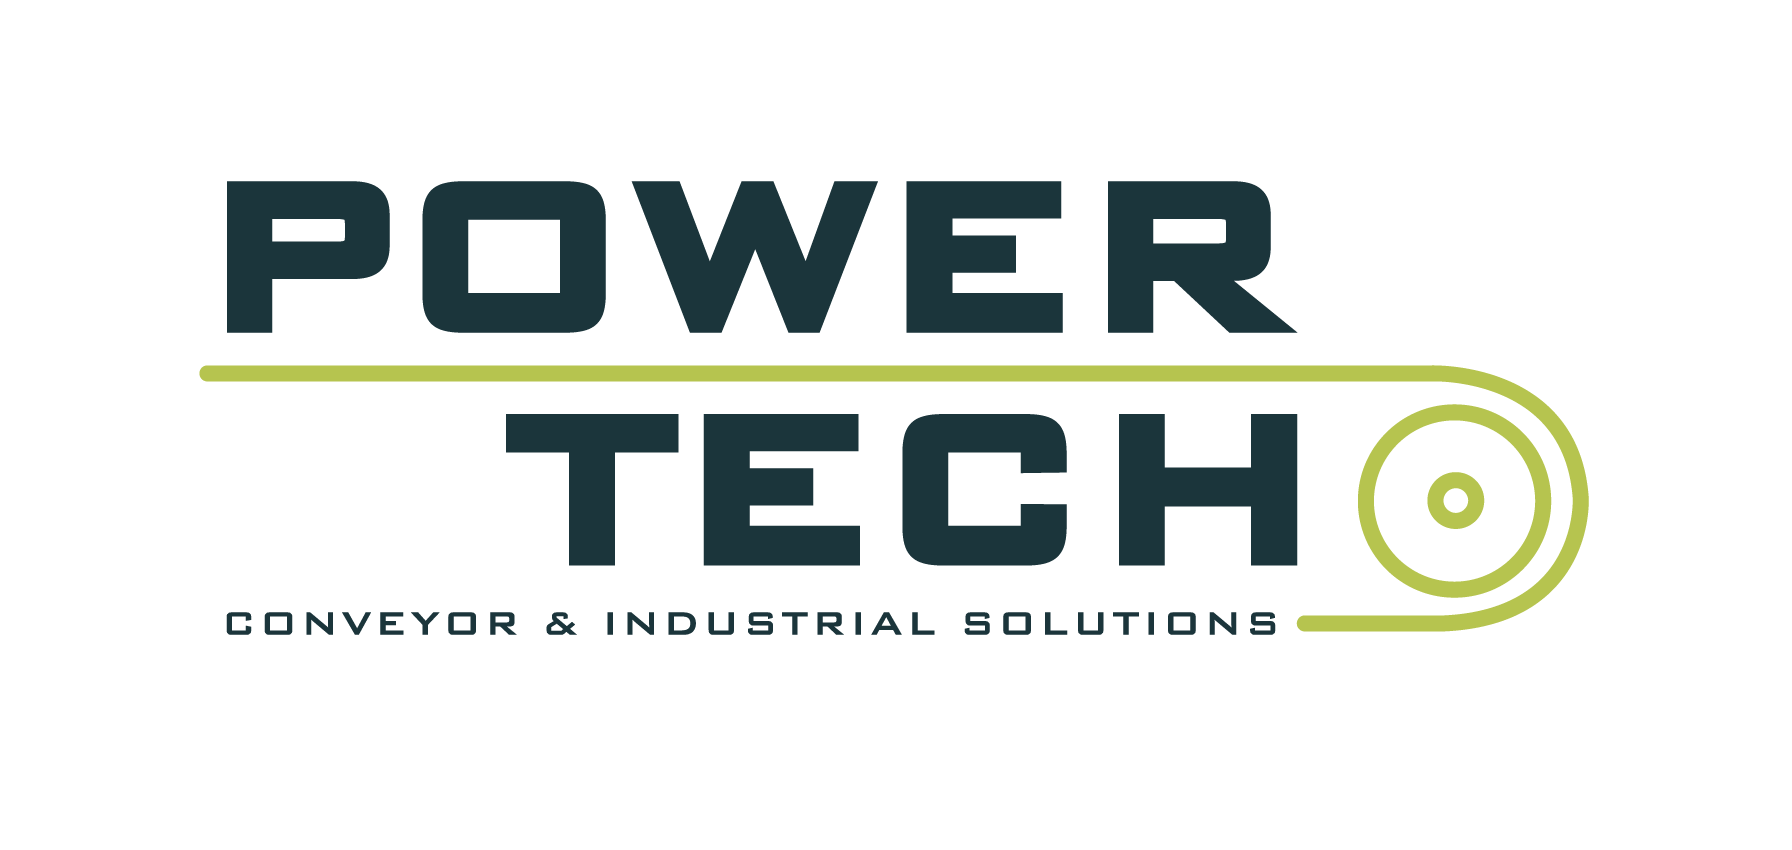 powertech